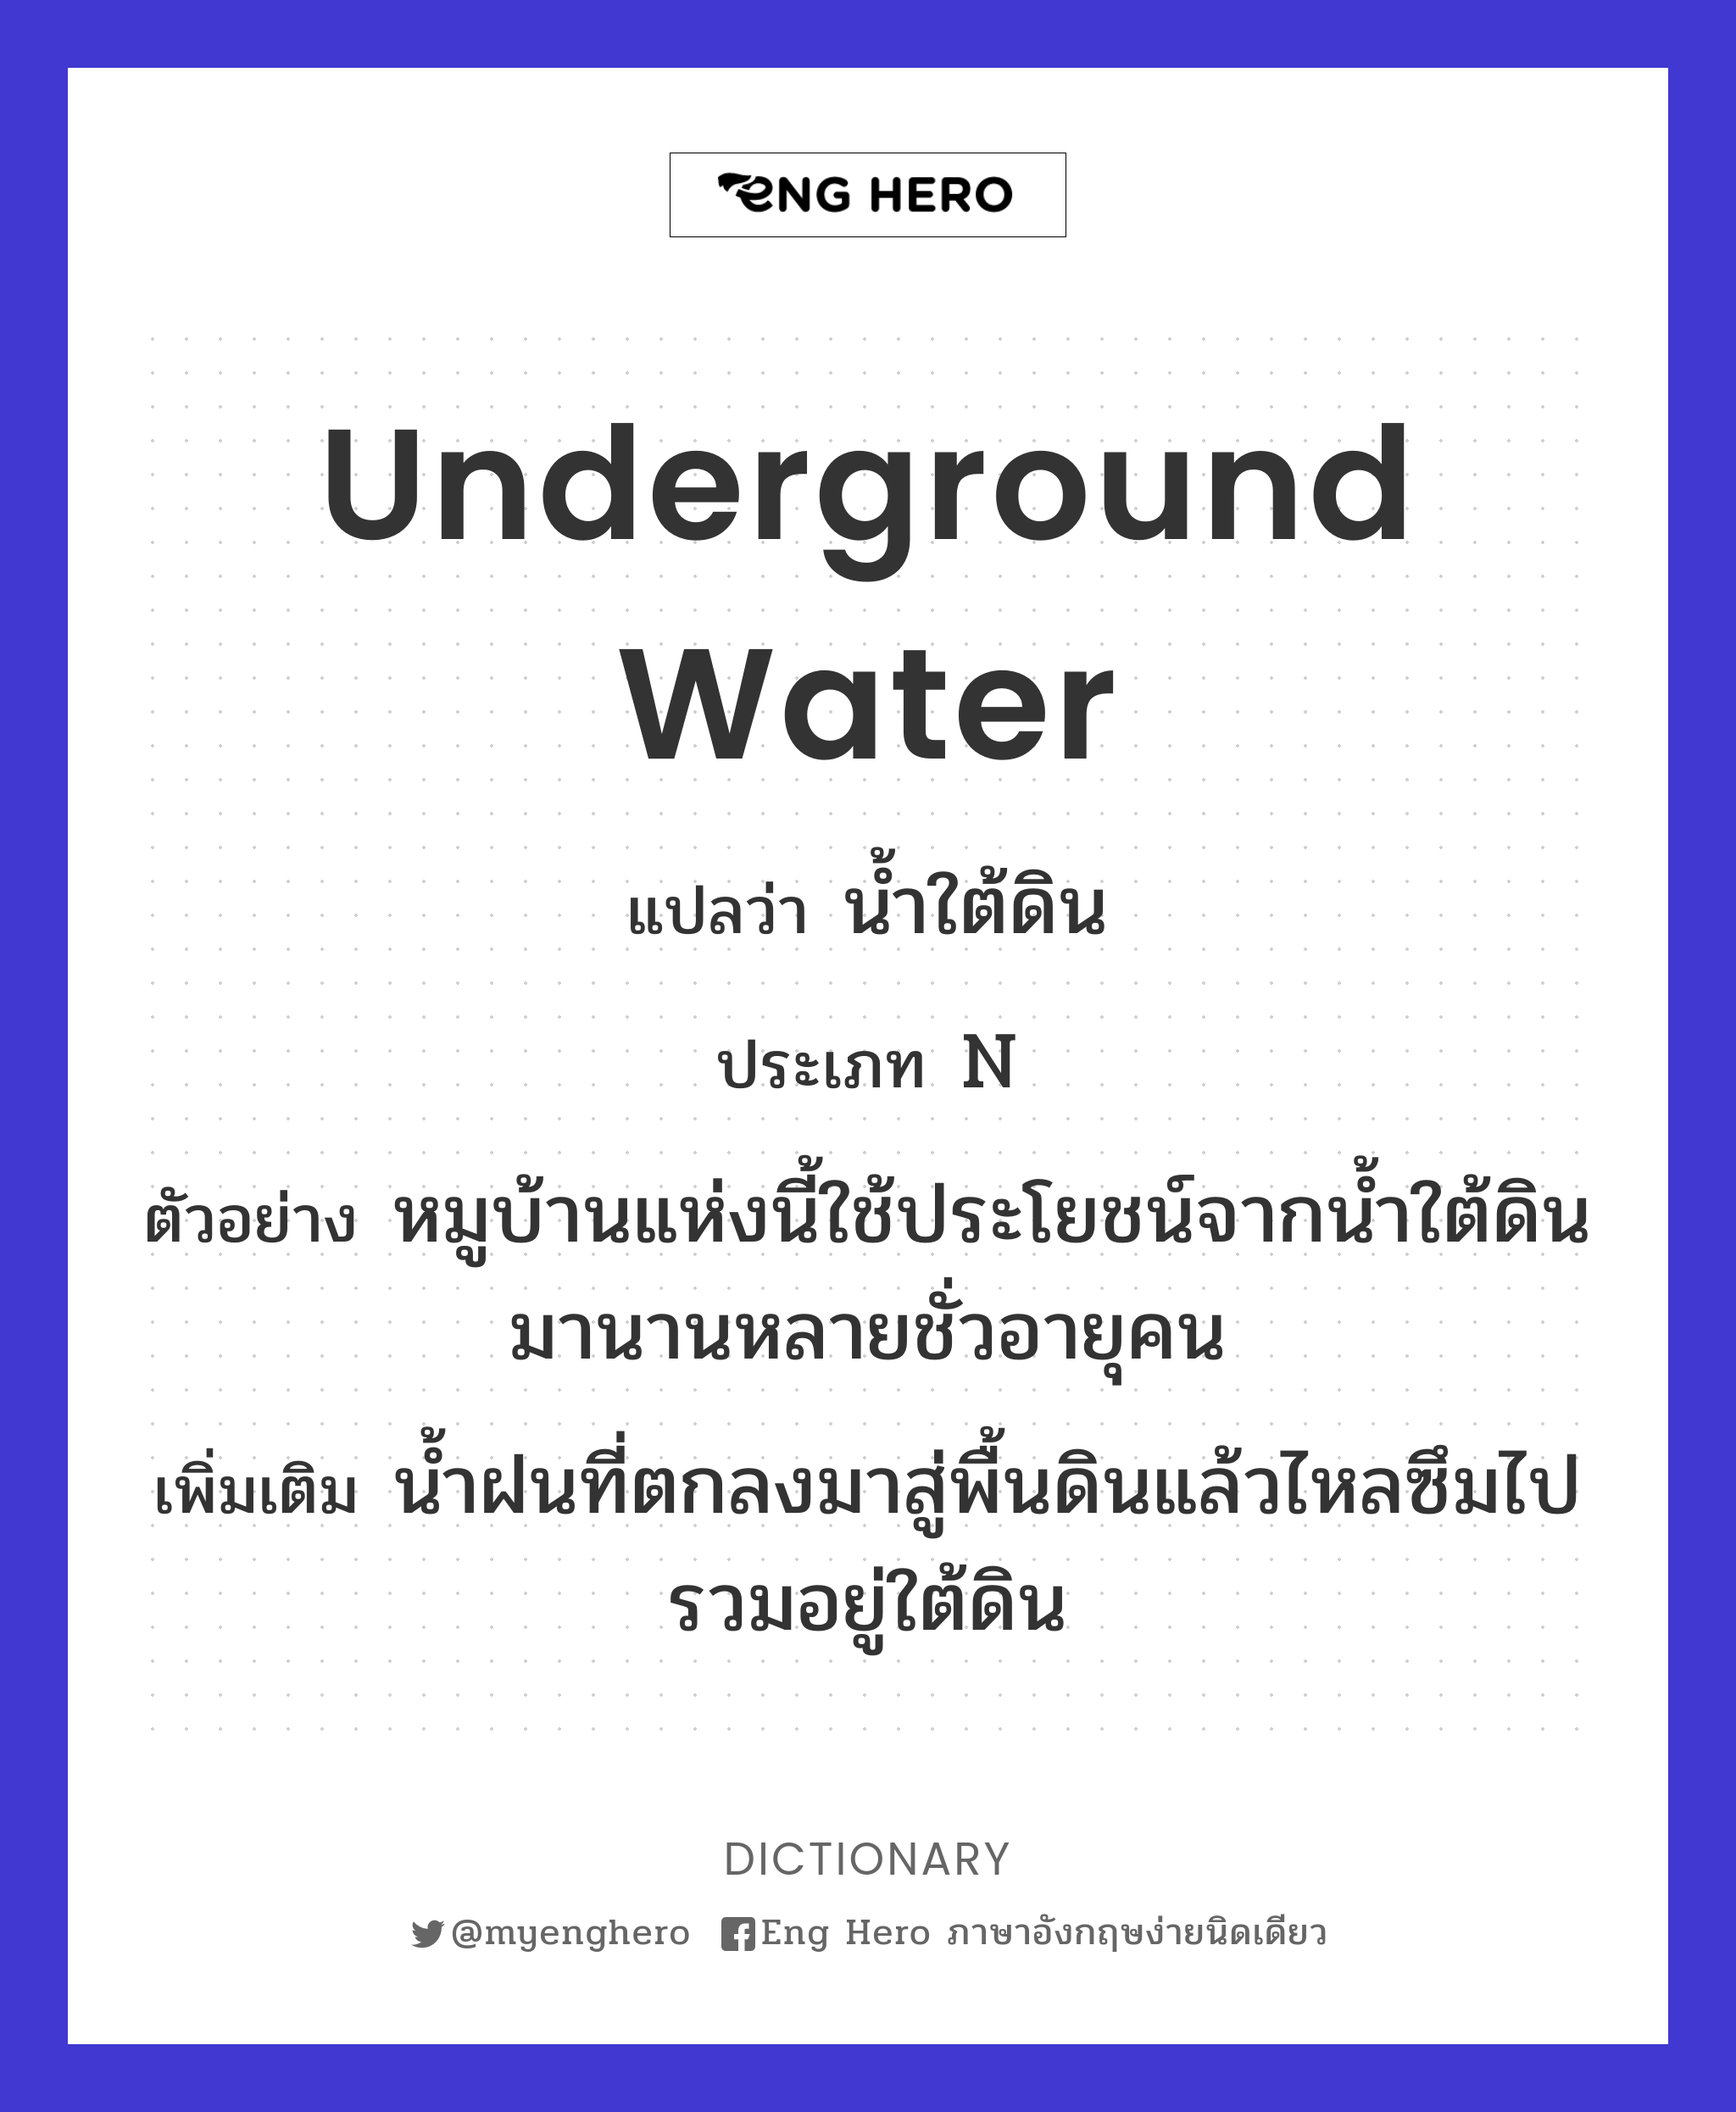 underground water